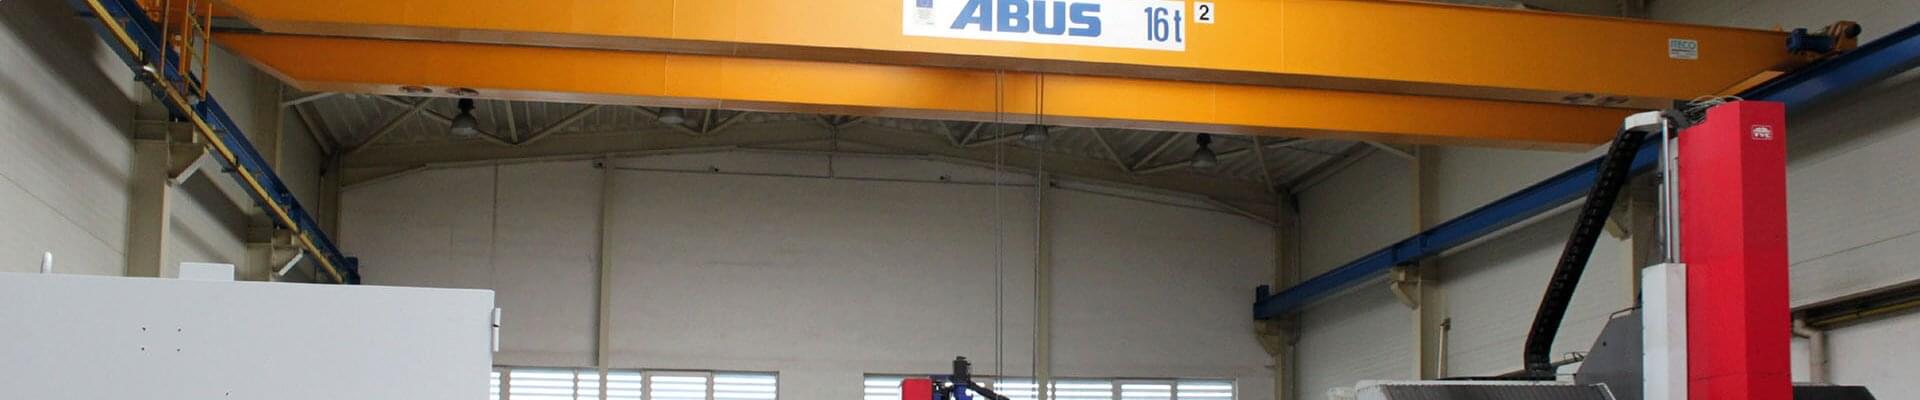 ABUS Krane in Herstellung für Metallsägemaschinen in Tschechien